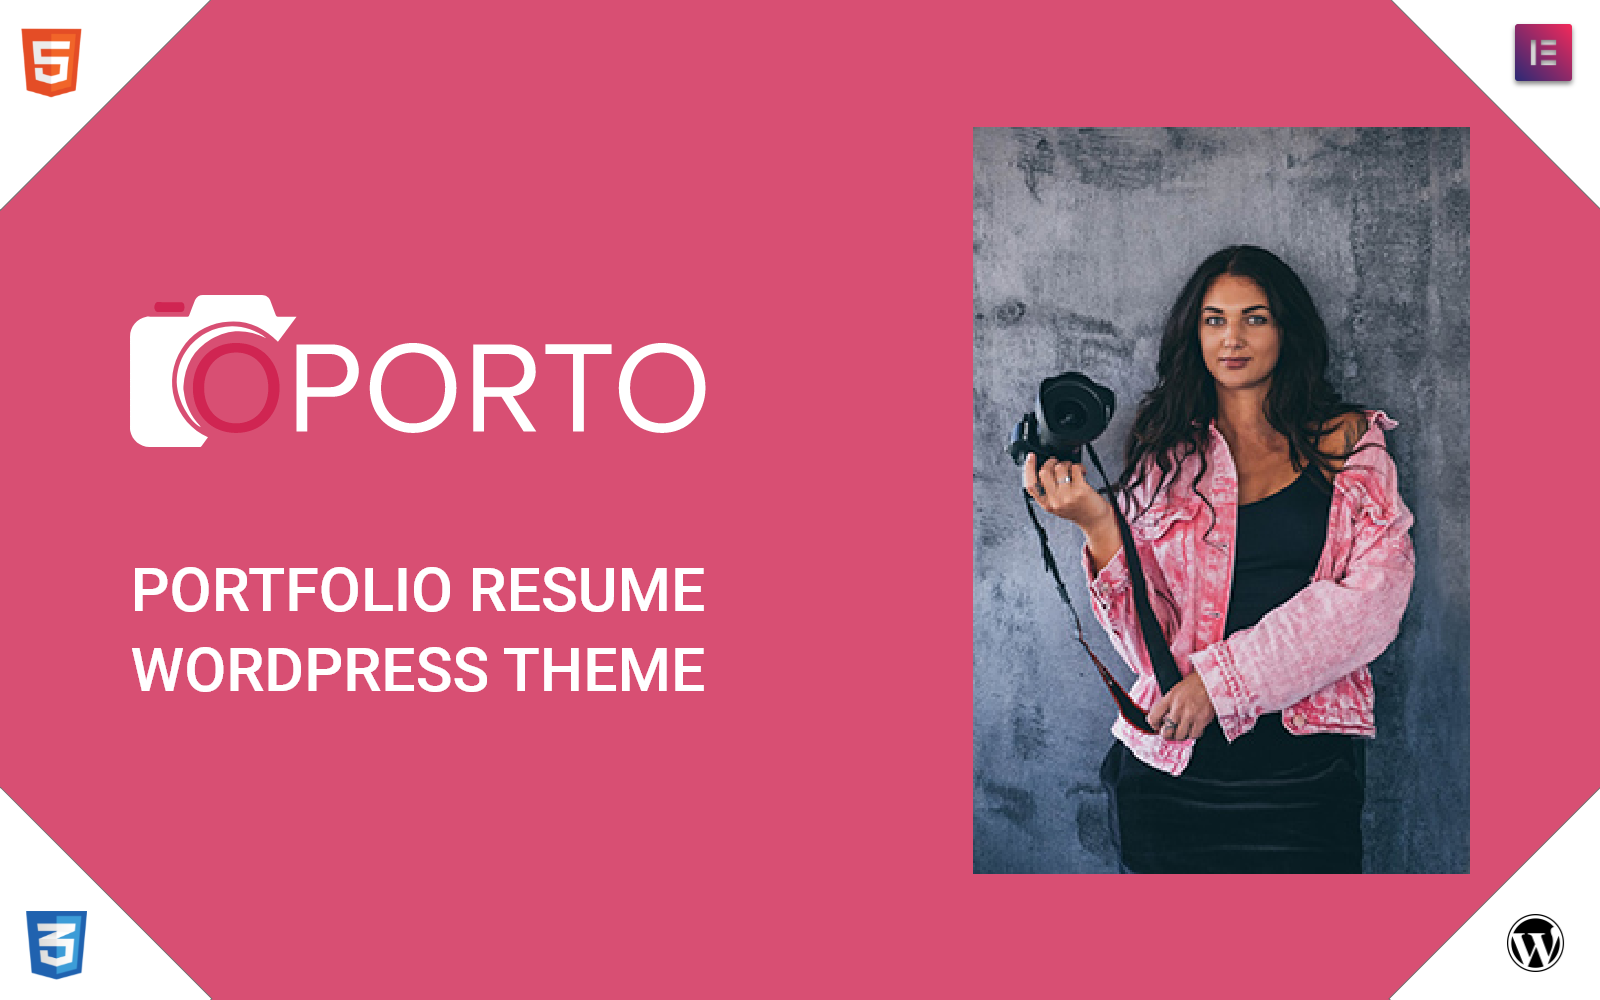 Шаблон Wordpress oPorto - Responsive Personal Portfolio Resume Theme WordPress